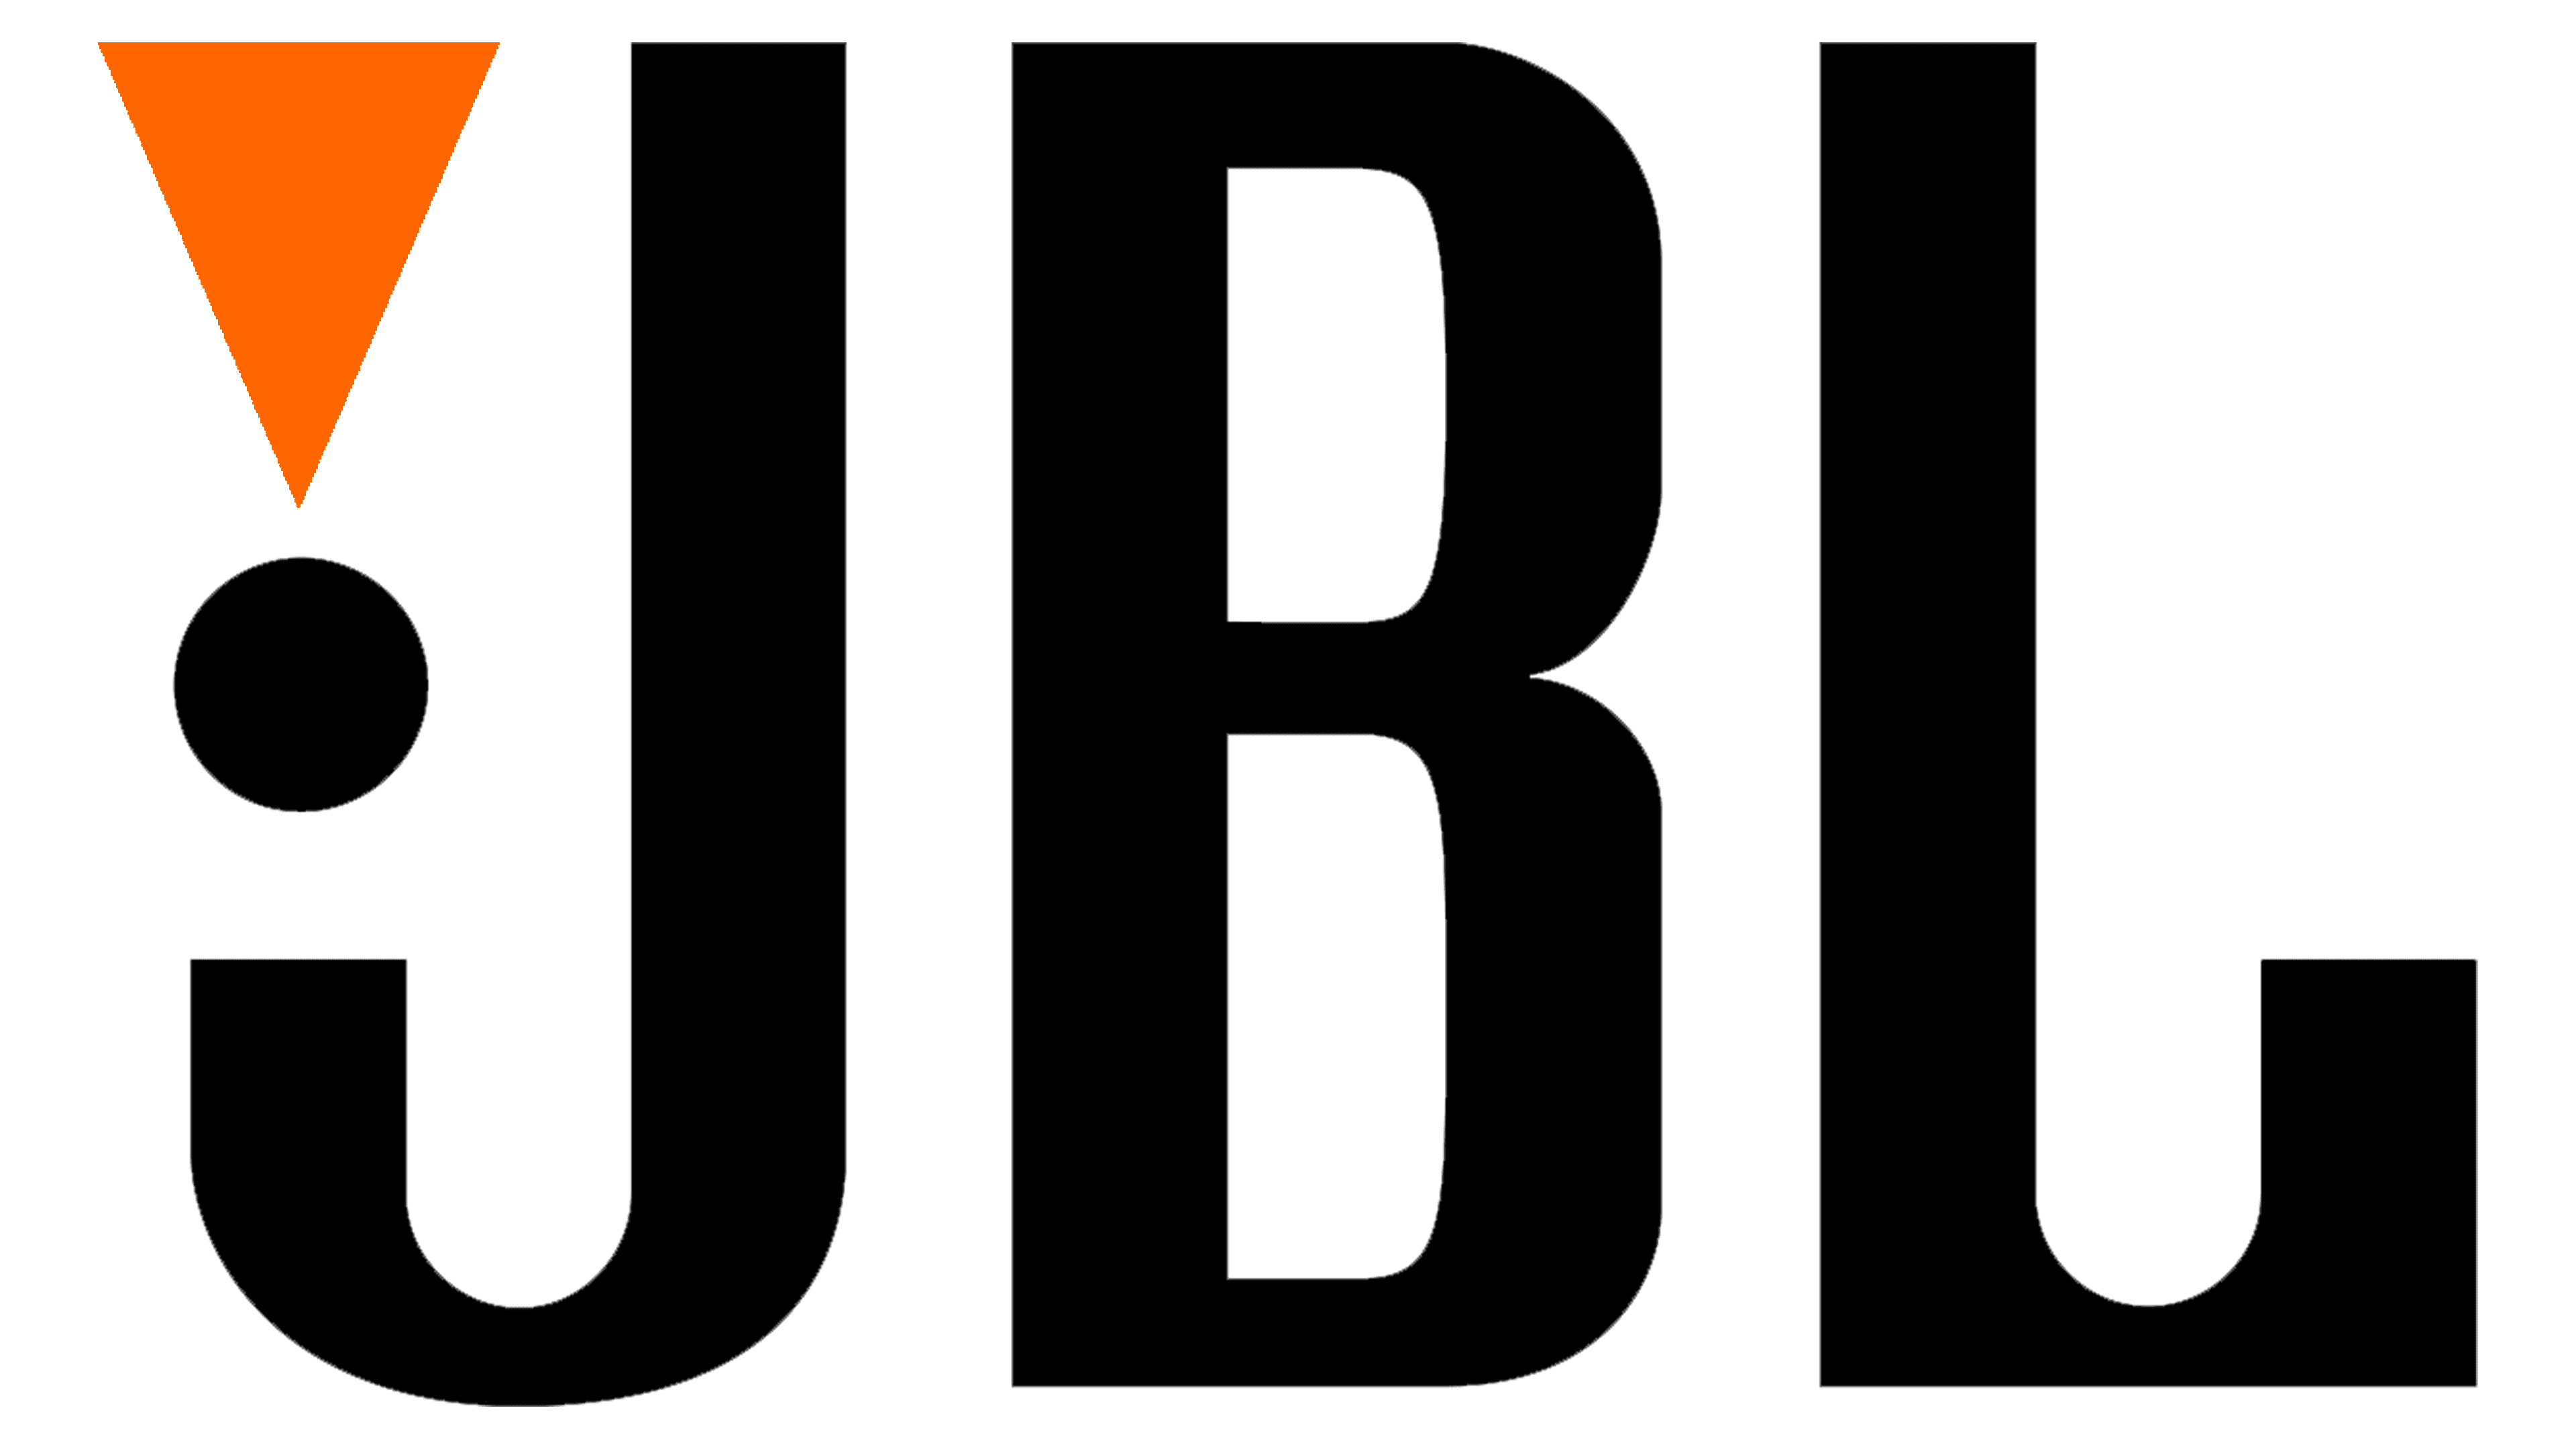 JBL Logo valor história PNG